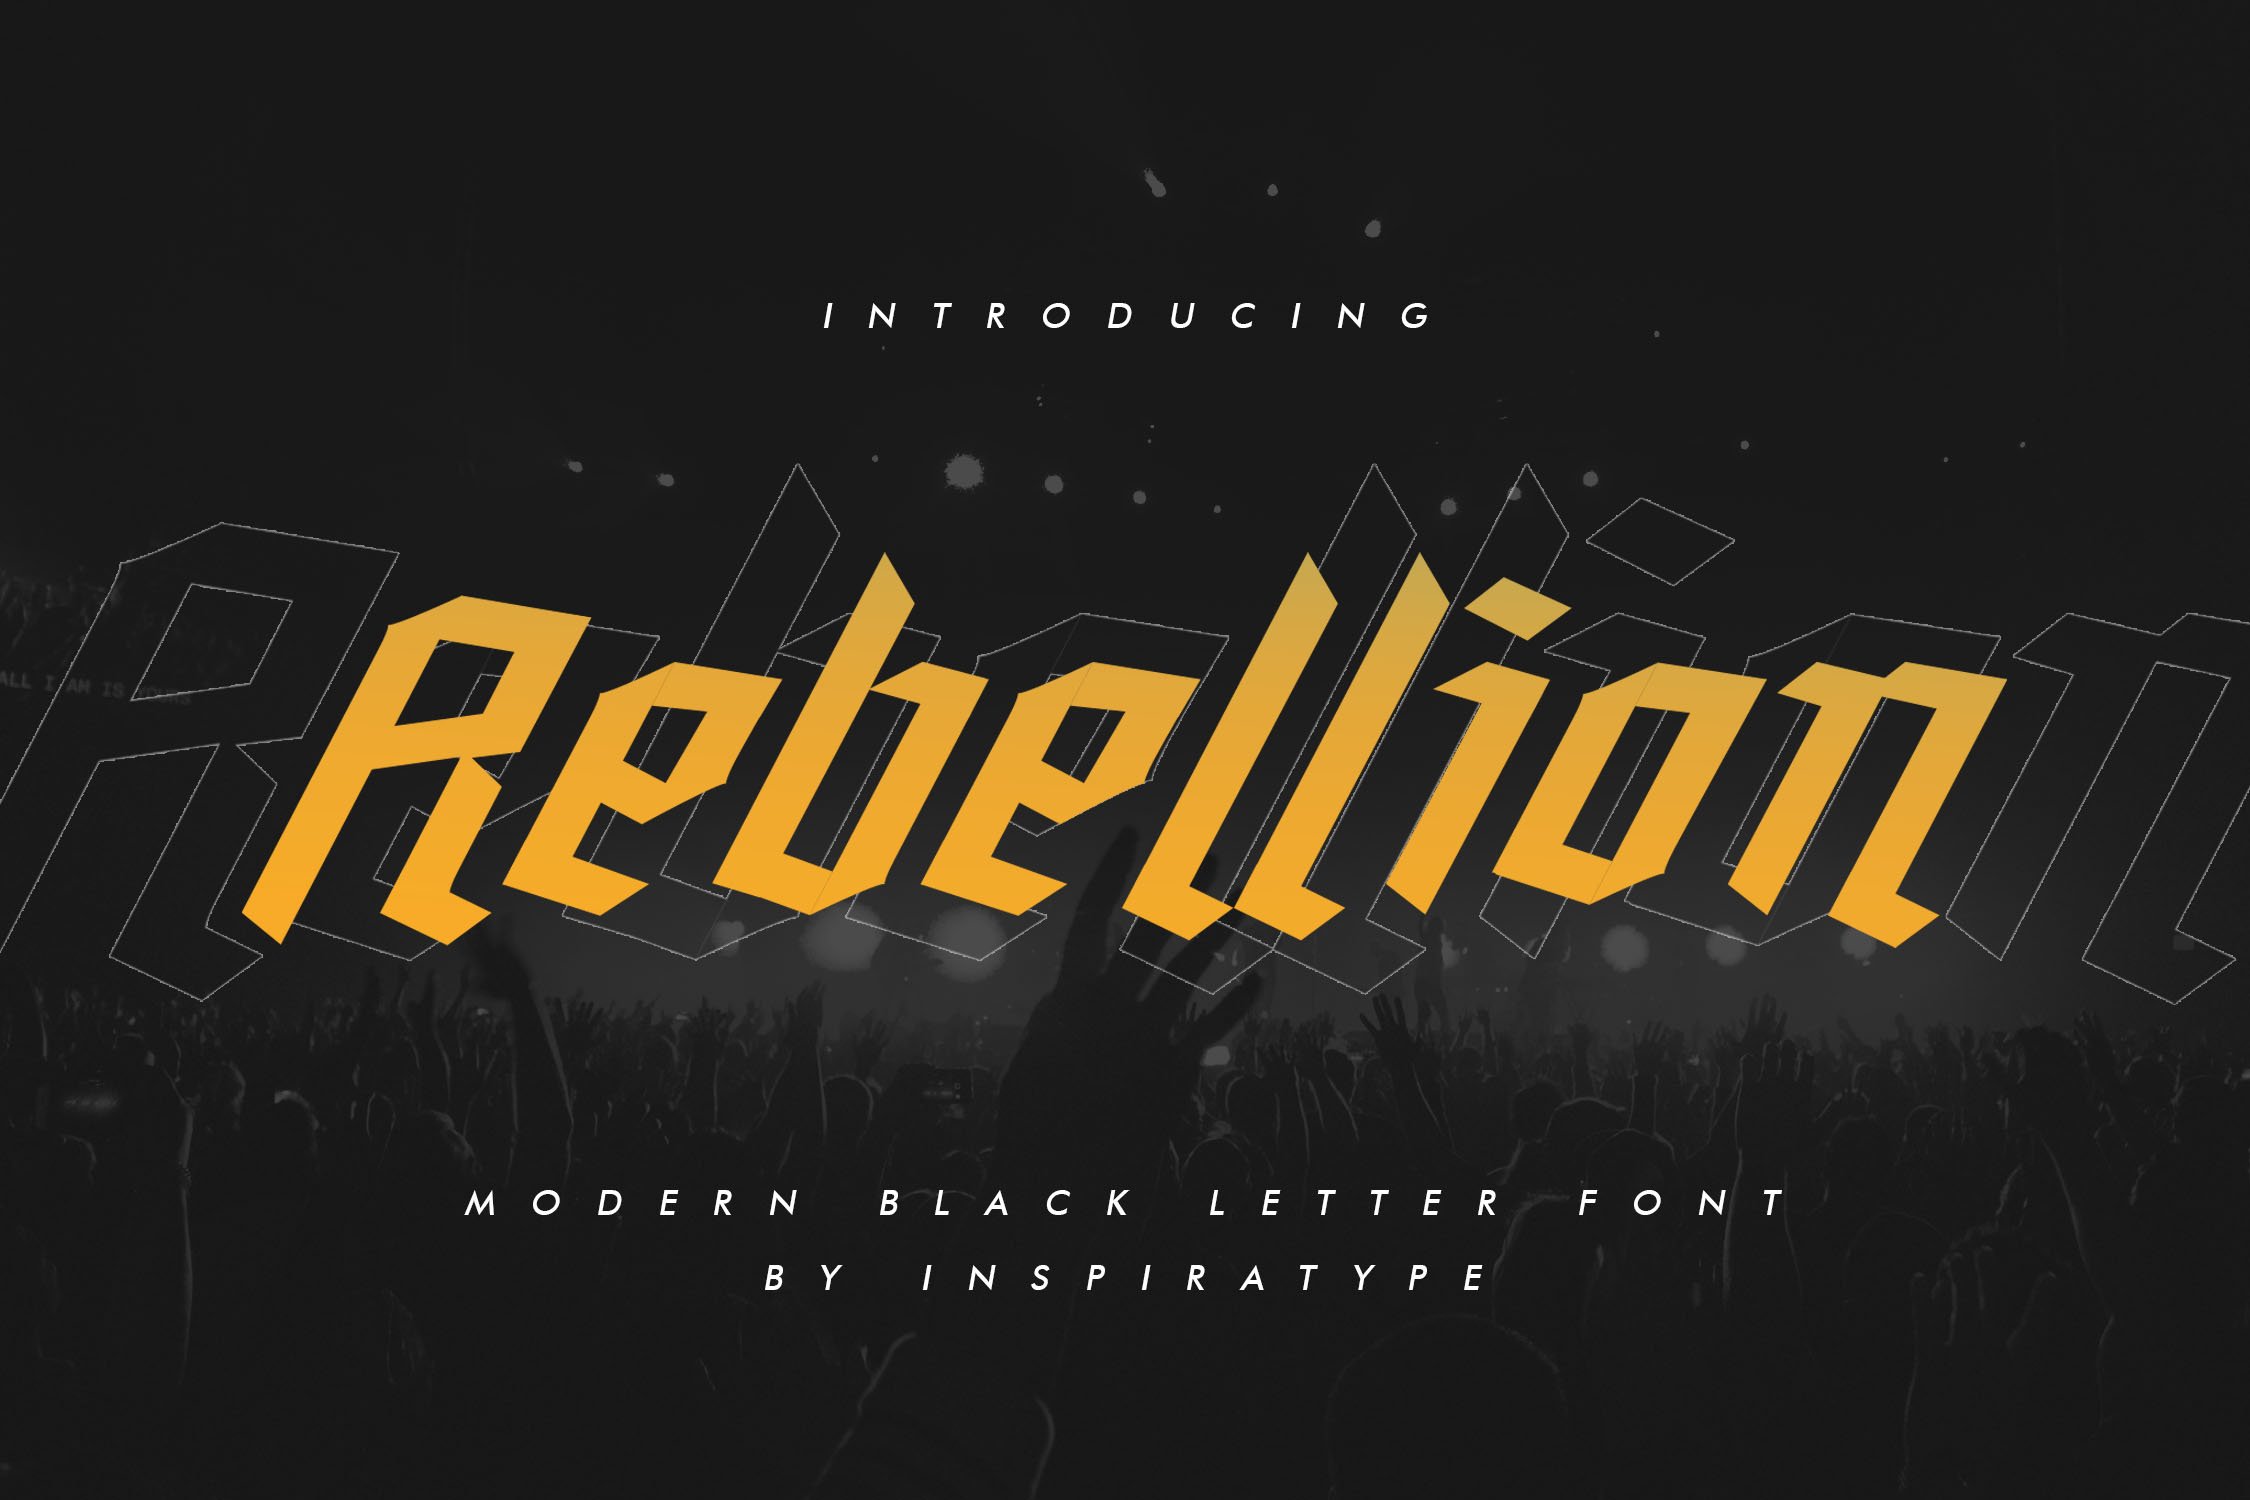 Rebellion - Modern Blackletter cover image.